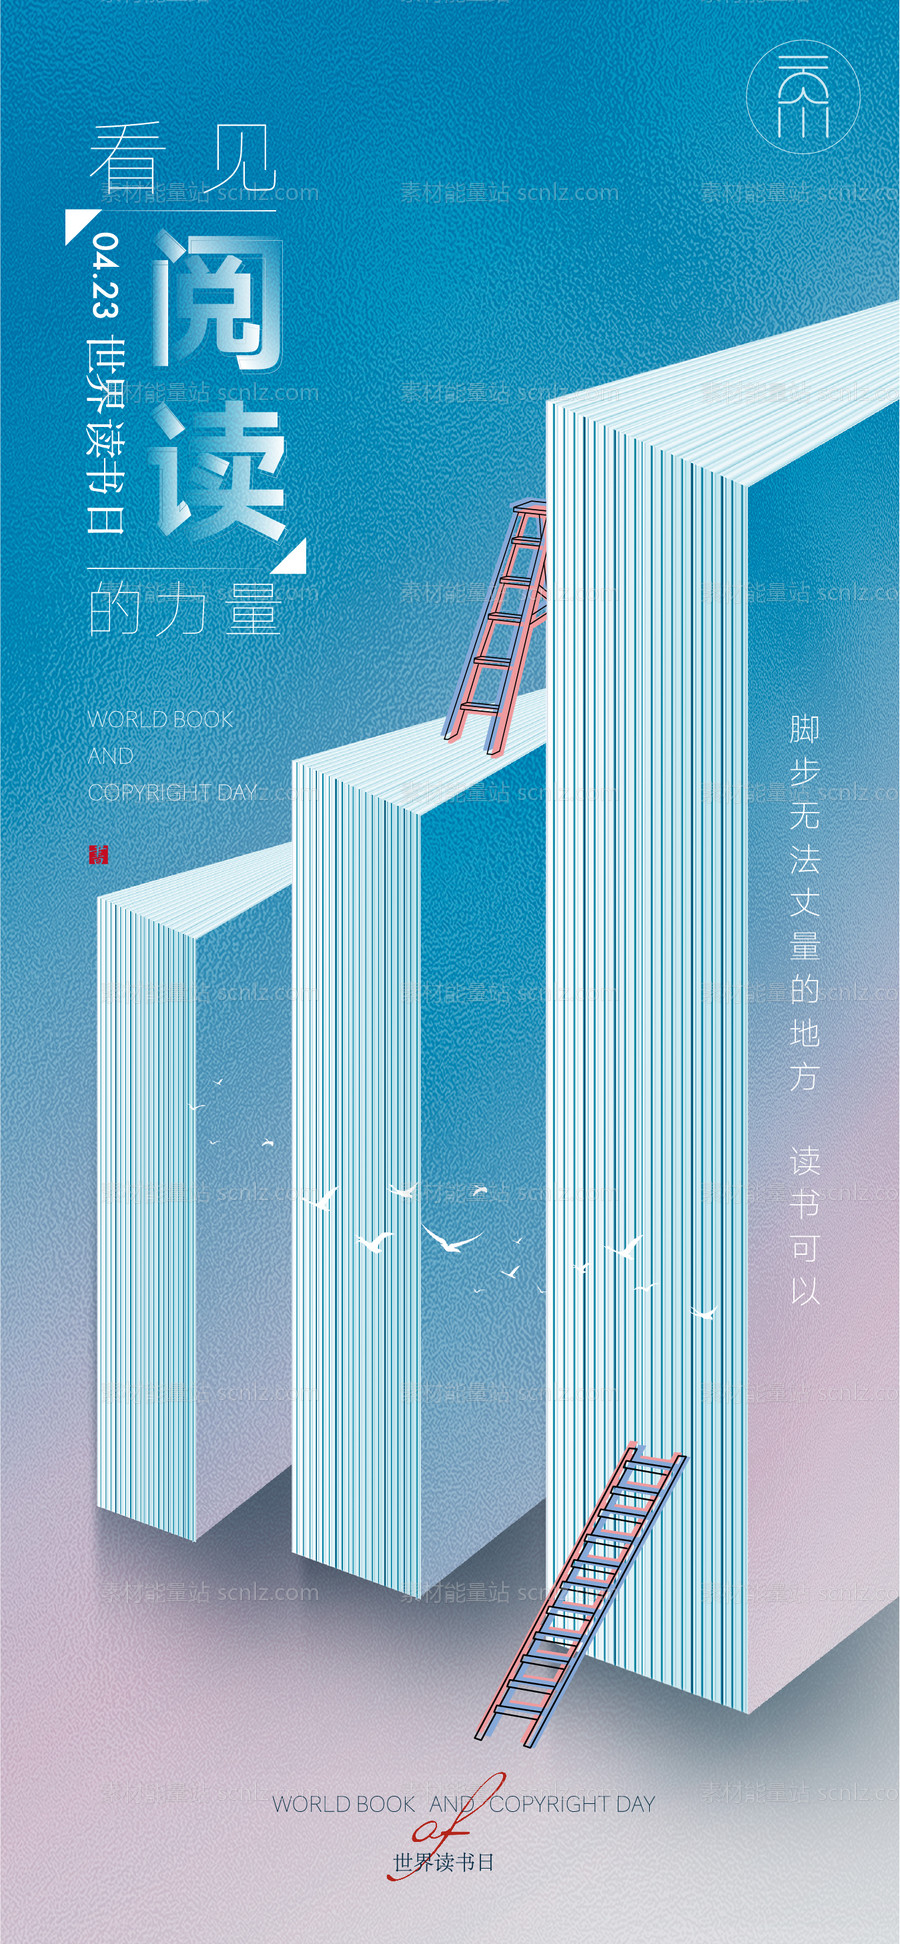 素材能量站-世界读书日海报